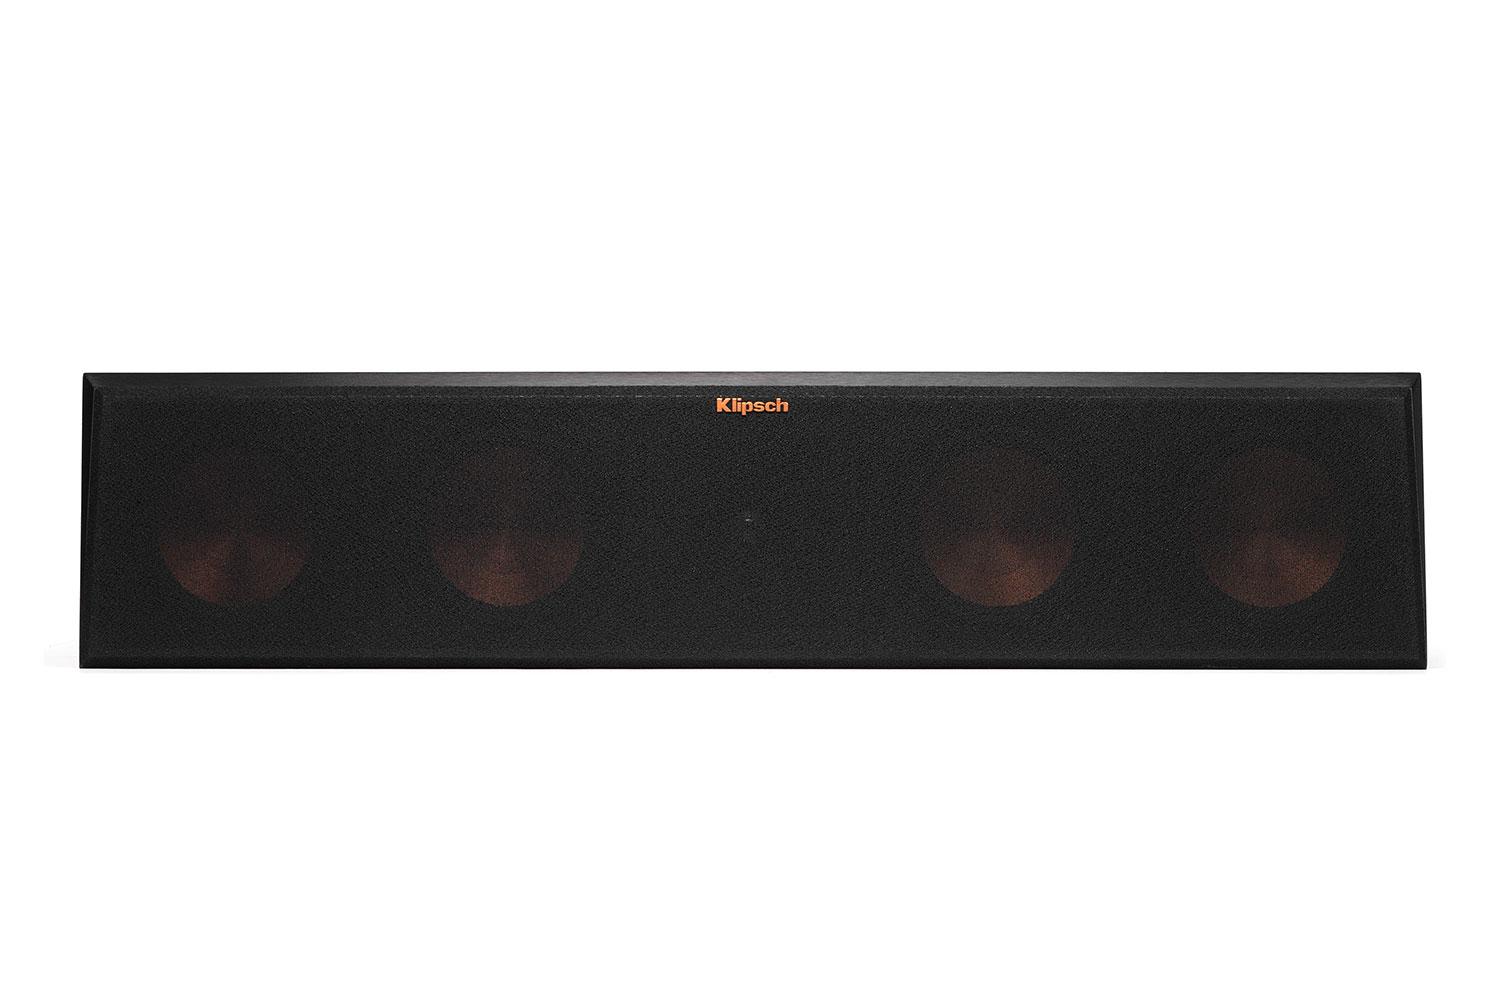 klipsch reference premier speaker system debuts at ces 2015 450c front grille